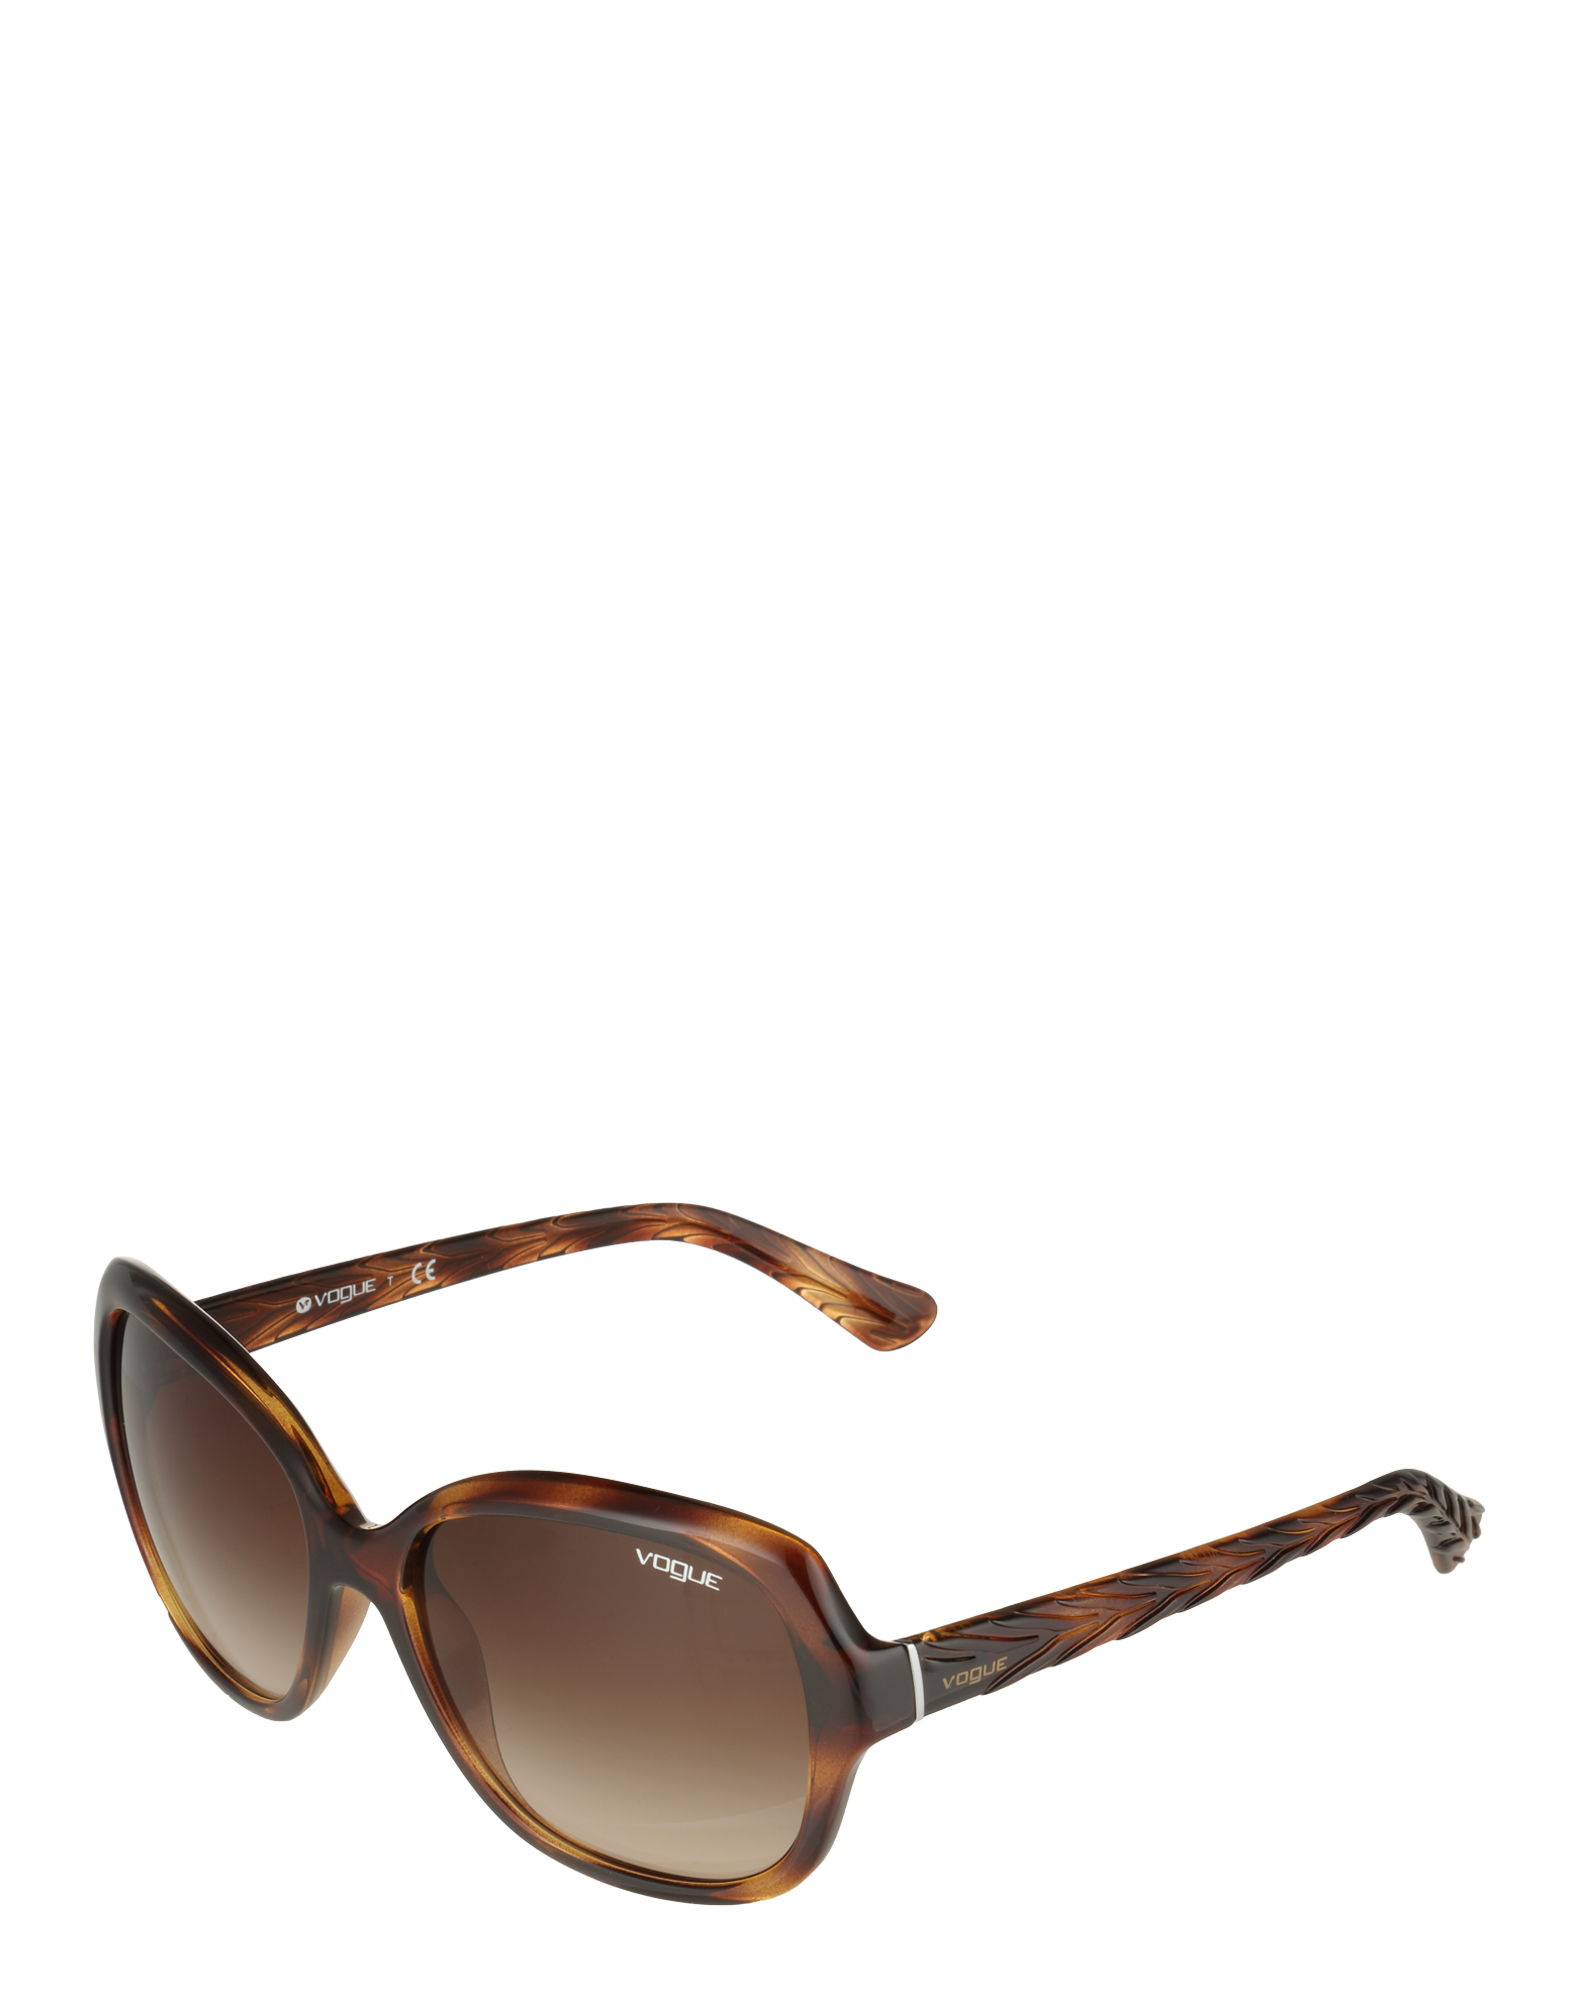 Akcesoria NkkQ4 VOGUE Eyewear Okulary przeciwsłoneczne w kolorze Brązowy, Ciemnobrązowym 